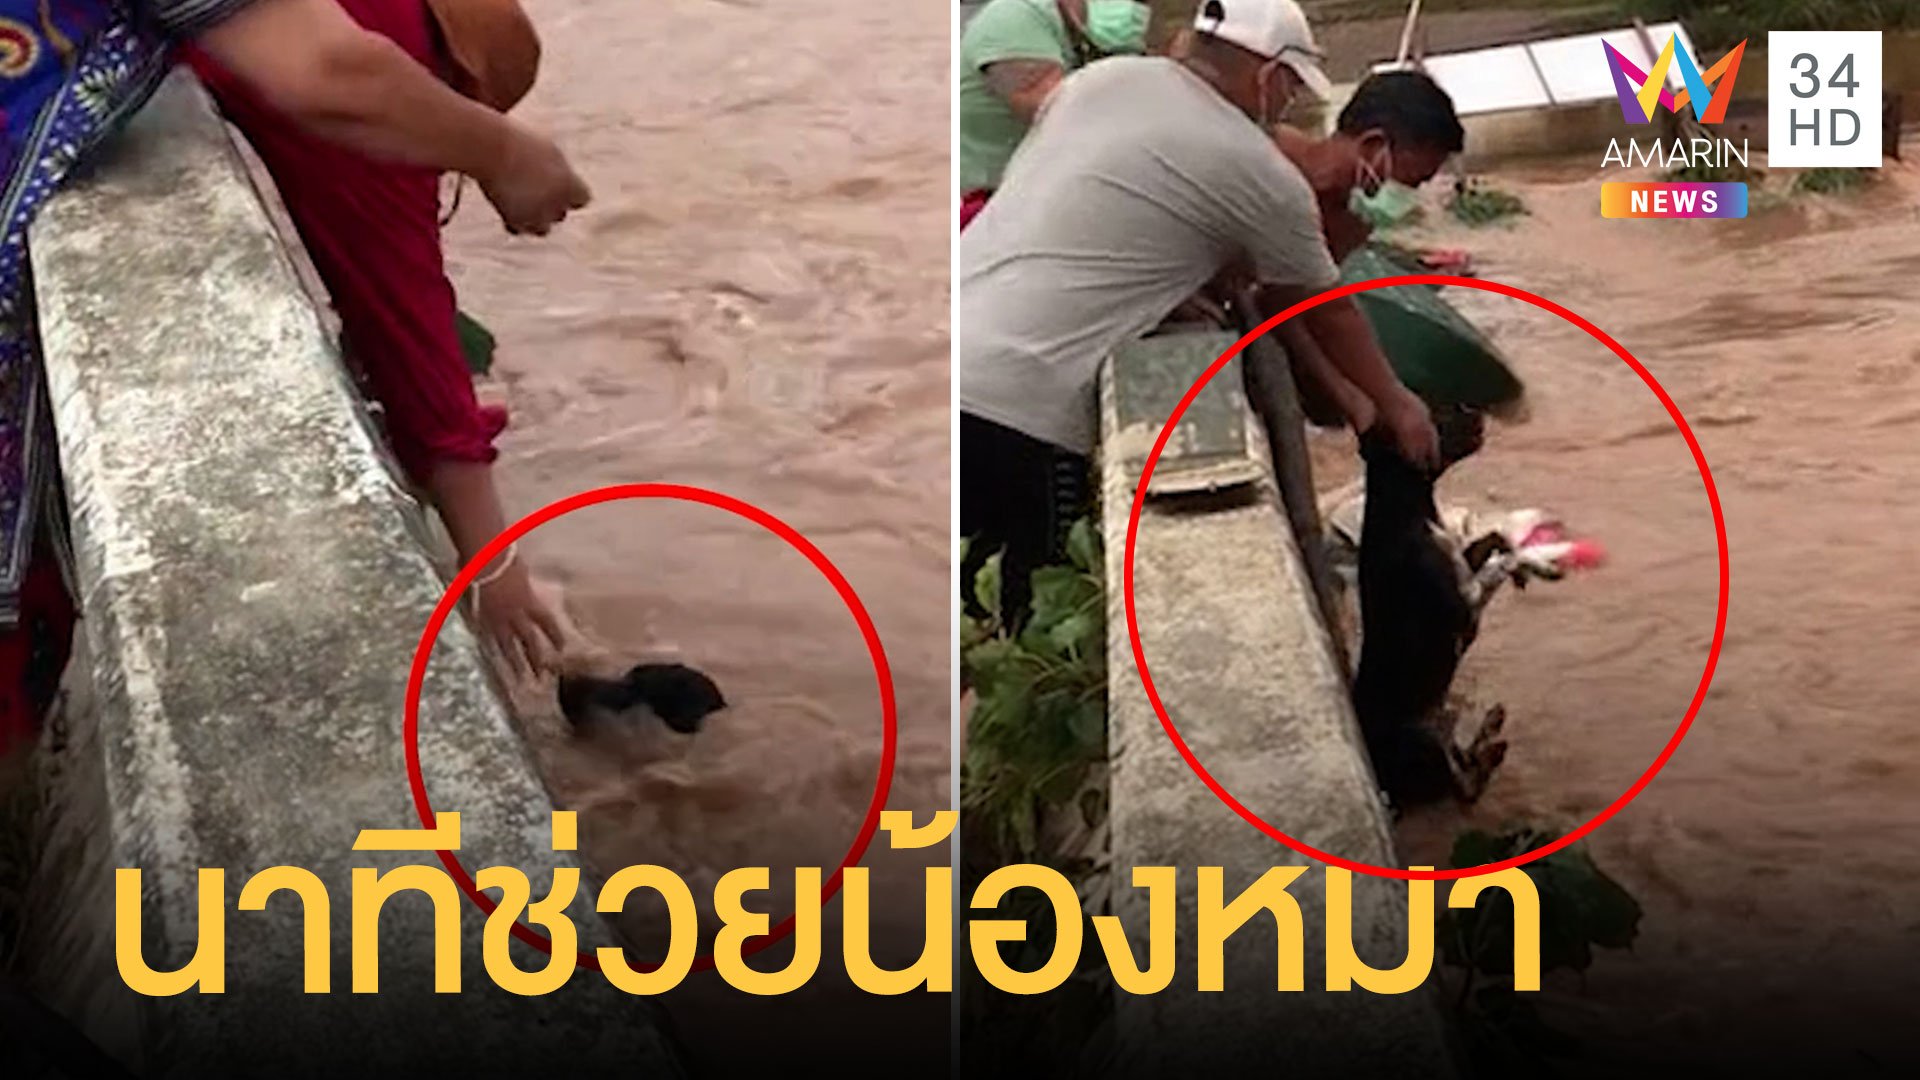 วินาทีช่วยน้องหมาถูกน้ำป่าซัดจมน้ำ | ข่าวอรุณอมรินทร์ | 28 ก.ย. 64 | AMARIN TVHD34